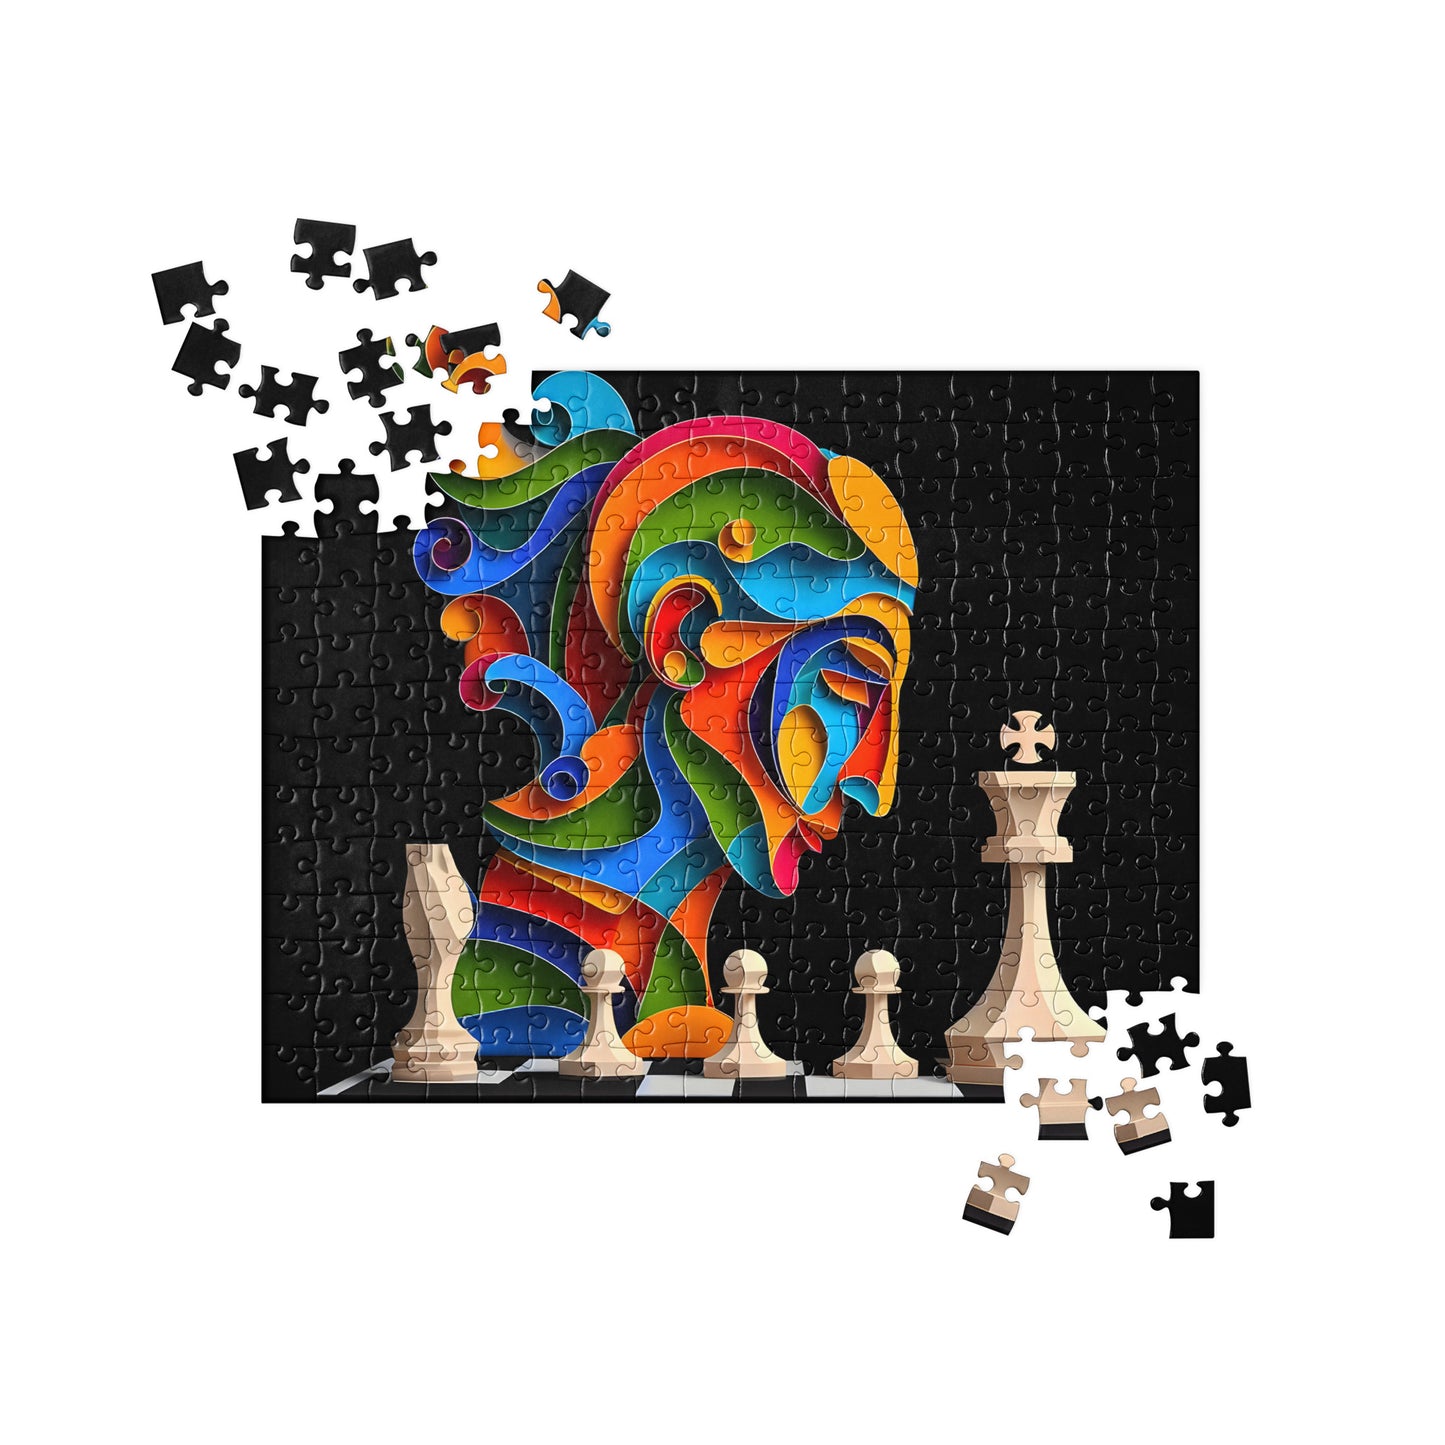 3D Chess Art - Jigsaw Puzzle #6